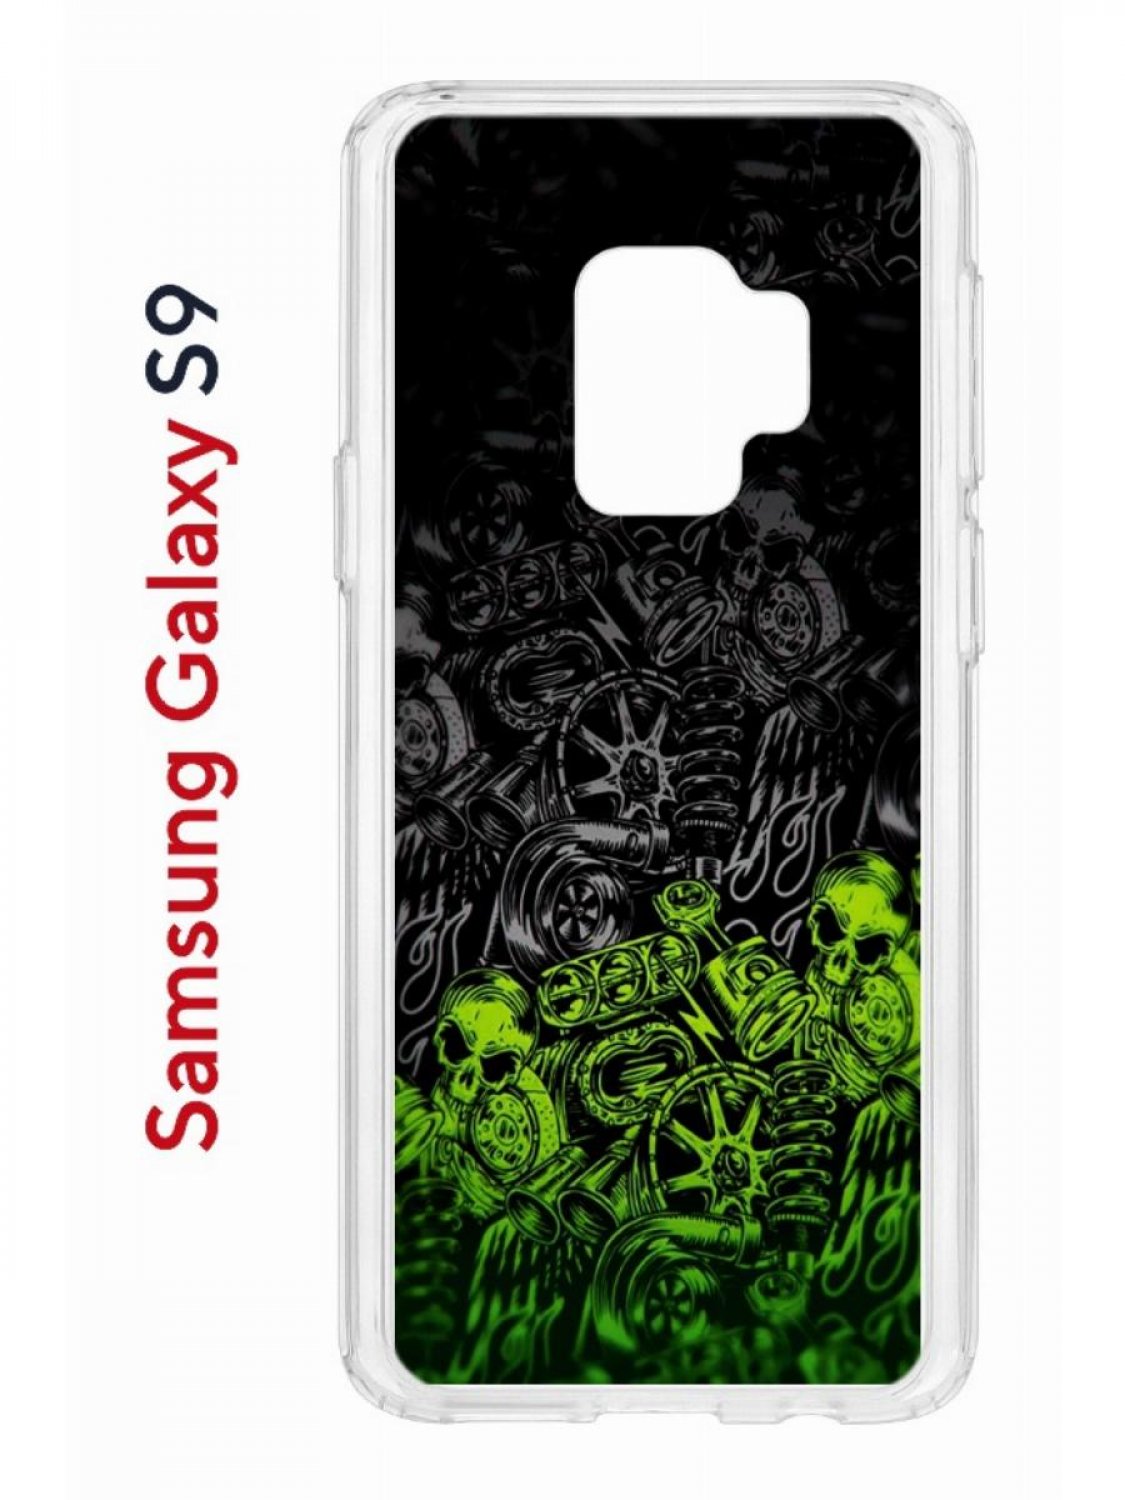 

Чехол на Samsung Galaxy S9 Kruche Print Garage,противоударный бампер,с защитой камеры, Прозрачный;черный;зеленый;серый, Самсунг Галакси с9